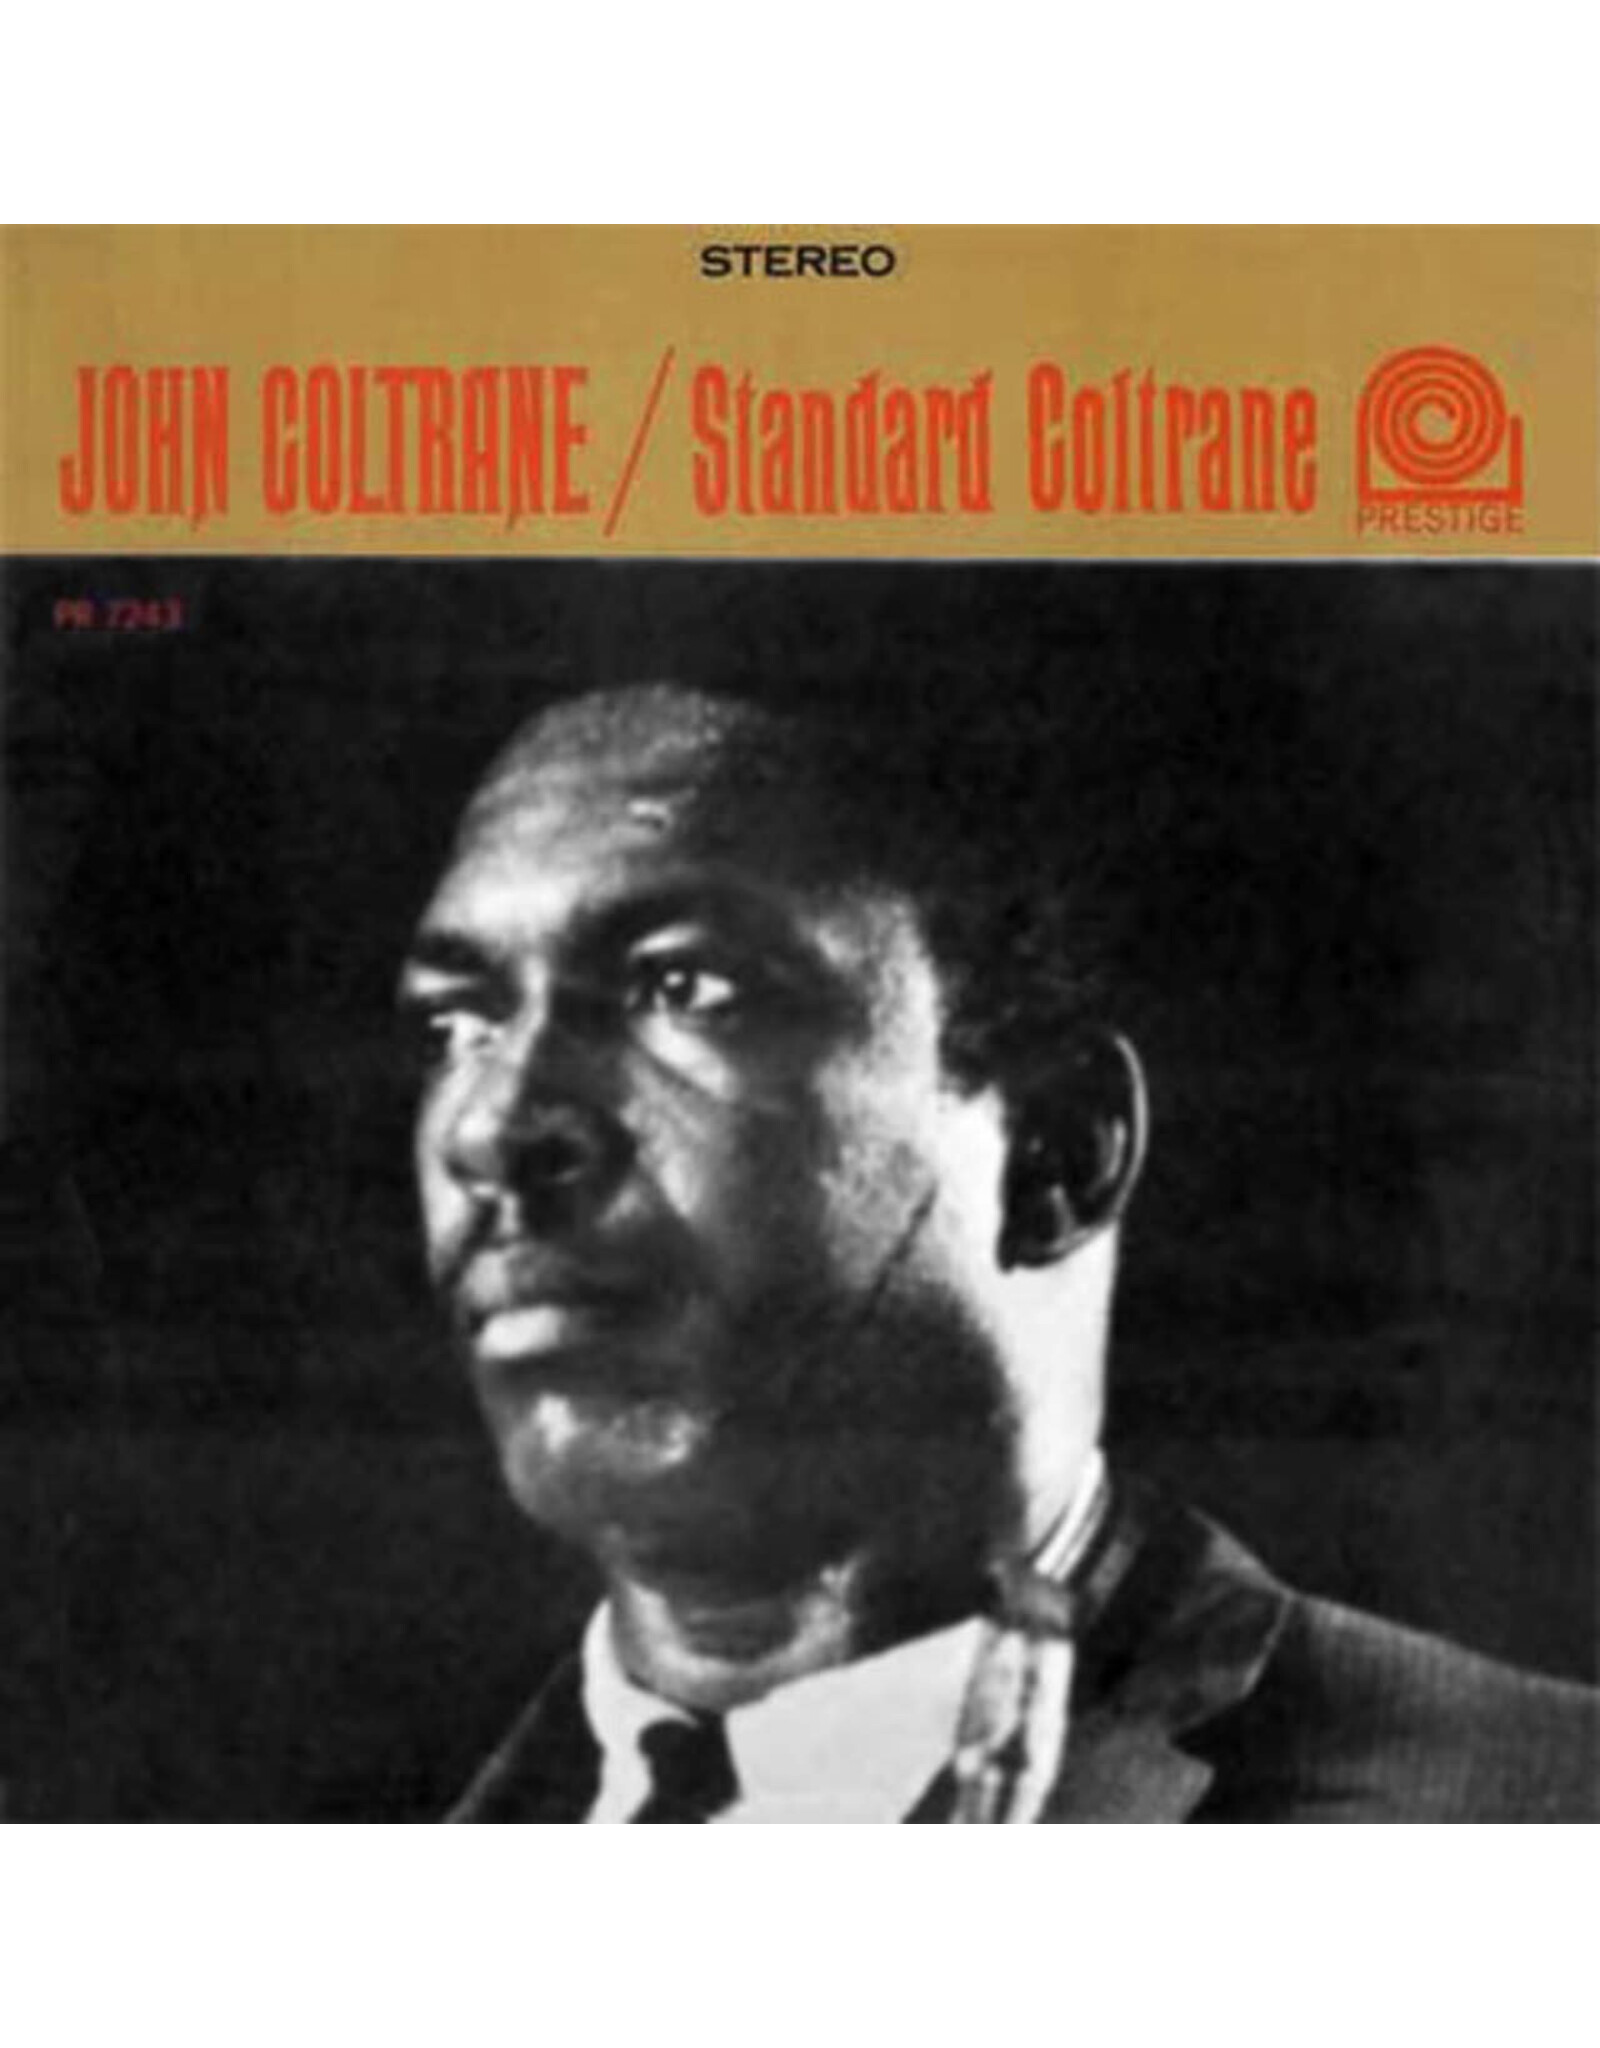 Analogue Productions Coltrane, John: Standard Coltrane LP